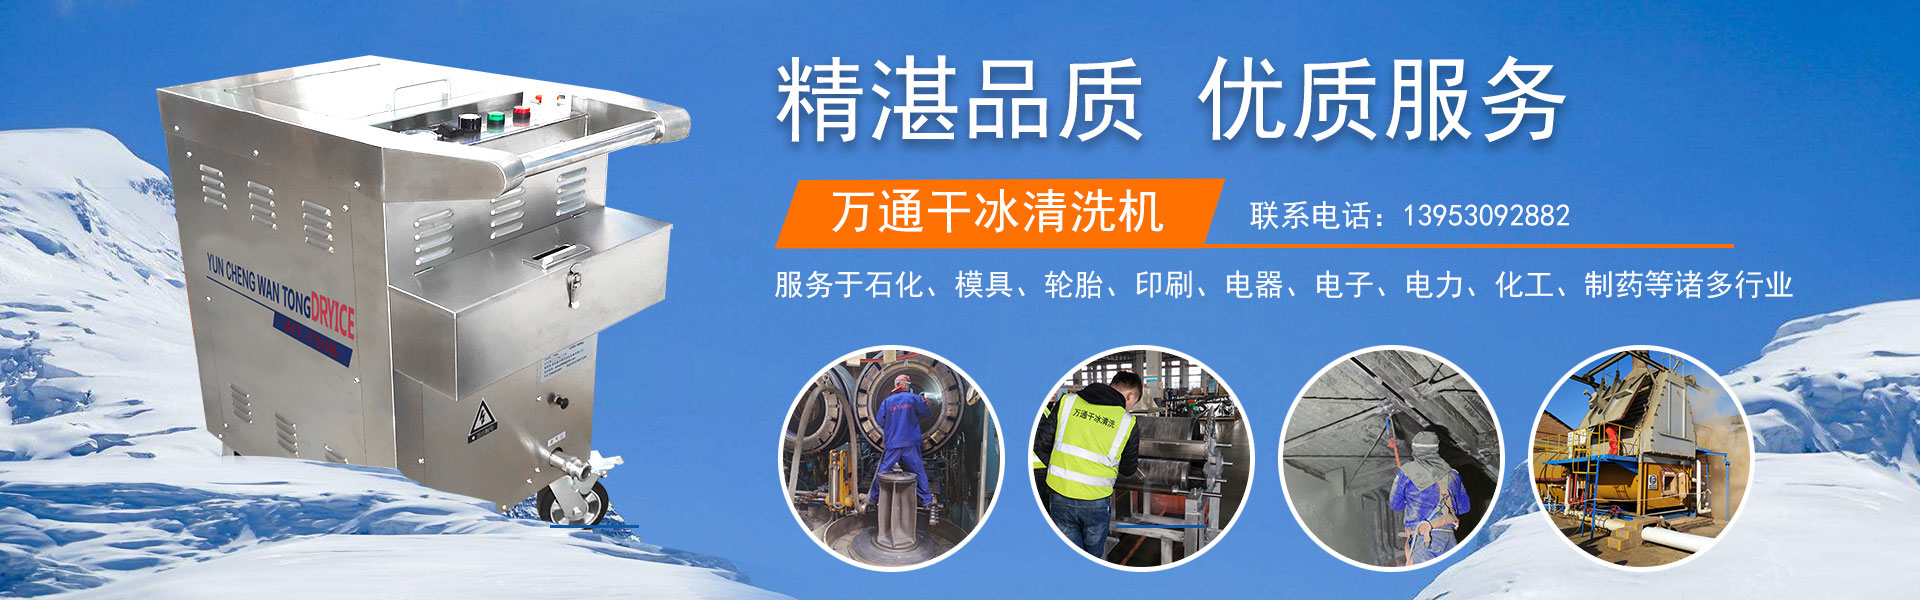 山东郓城万通干冰设备自动化有限公司